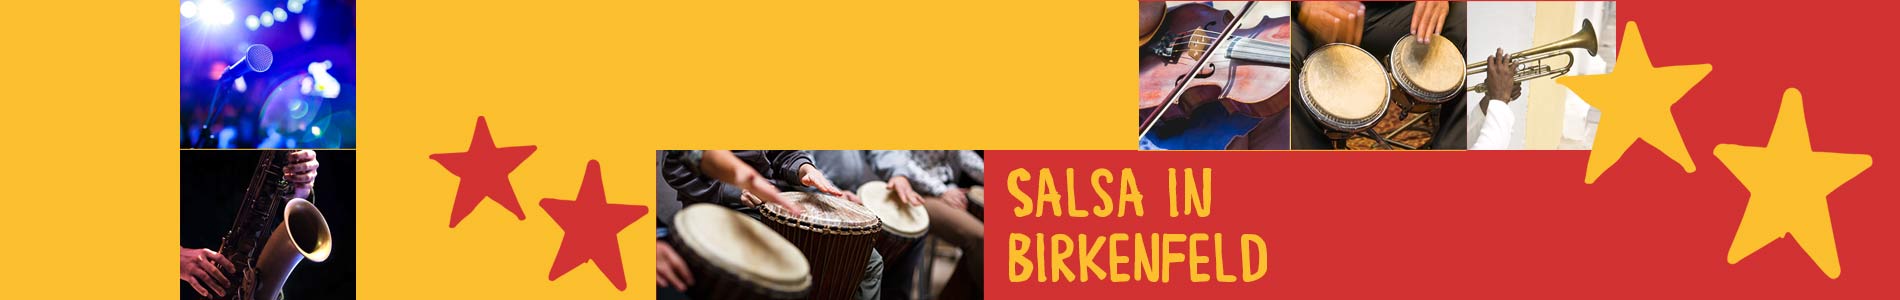 Salsa in Birkenfeld – Salsa lernen und tanzen, Tanzkurse, Partys, Veranstaltungen